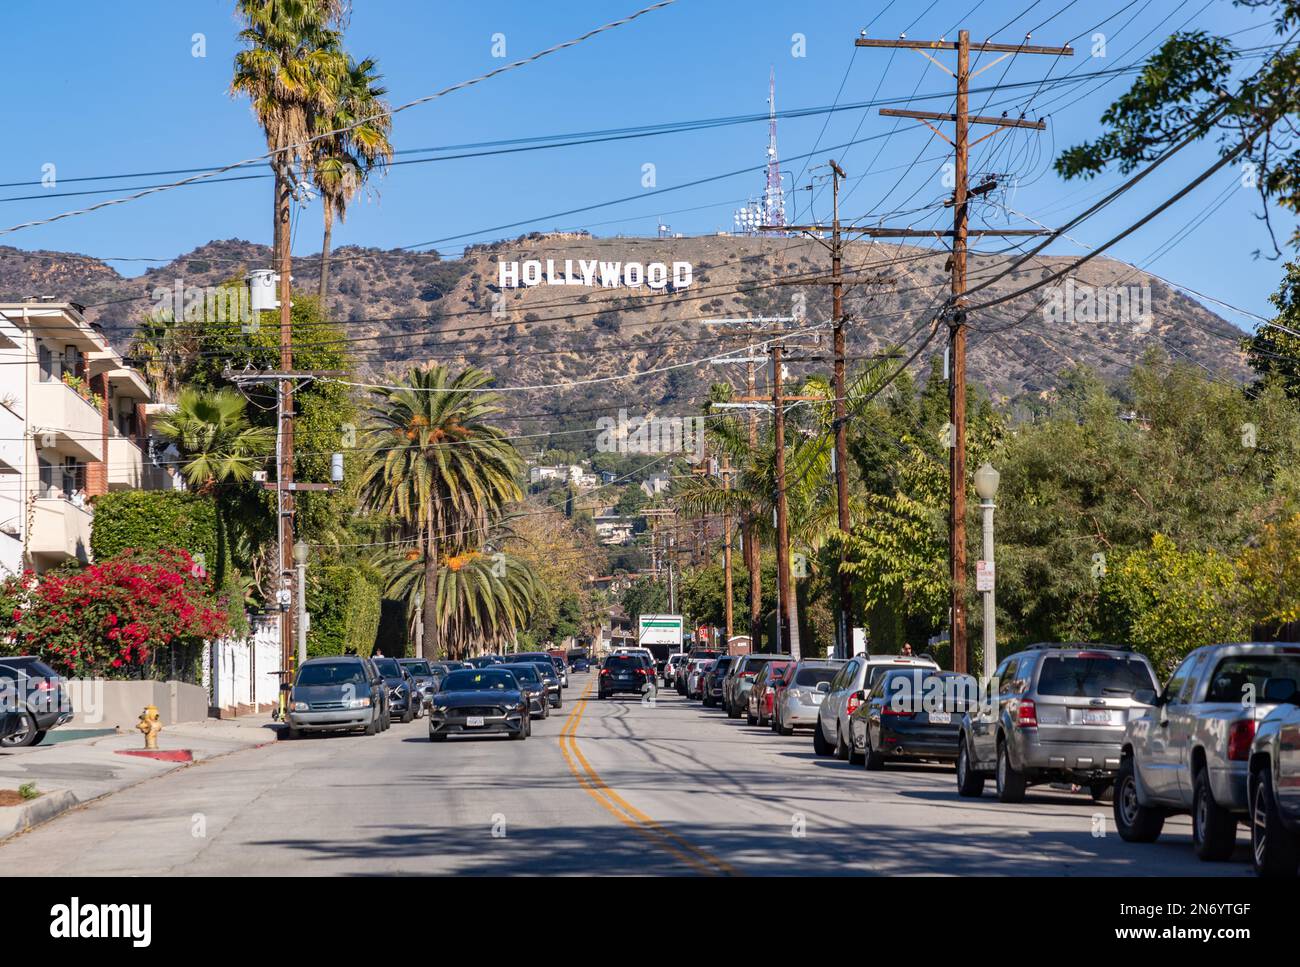 Una imagen del cartel de Hollywood visto desde North Beachwood Drive. Foto de stock